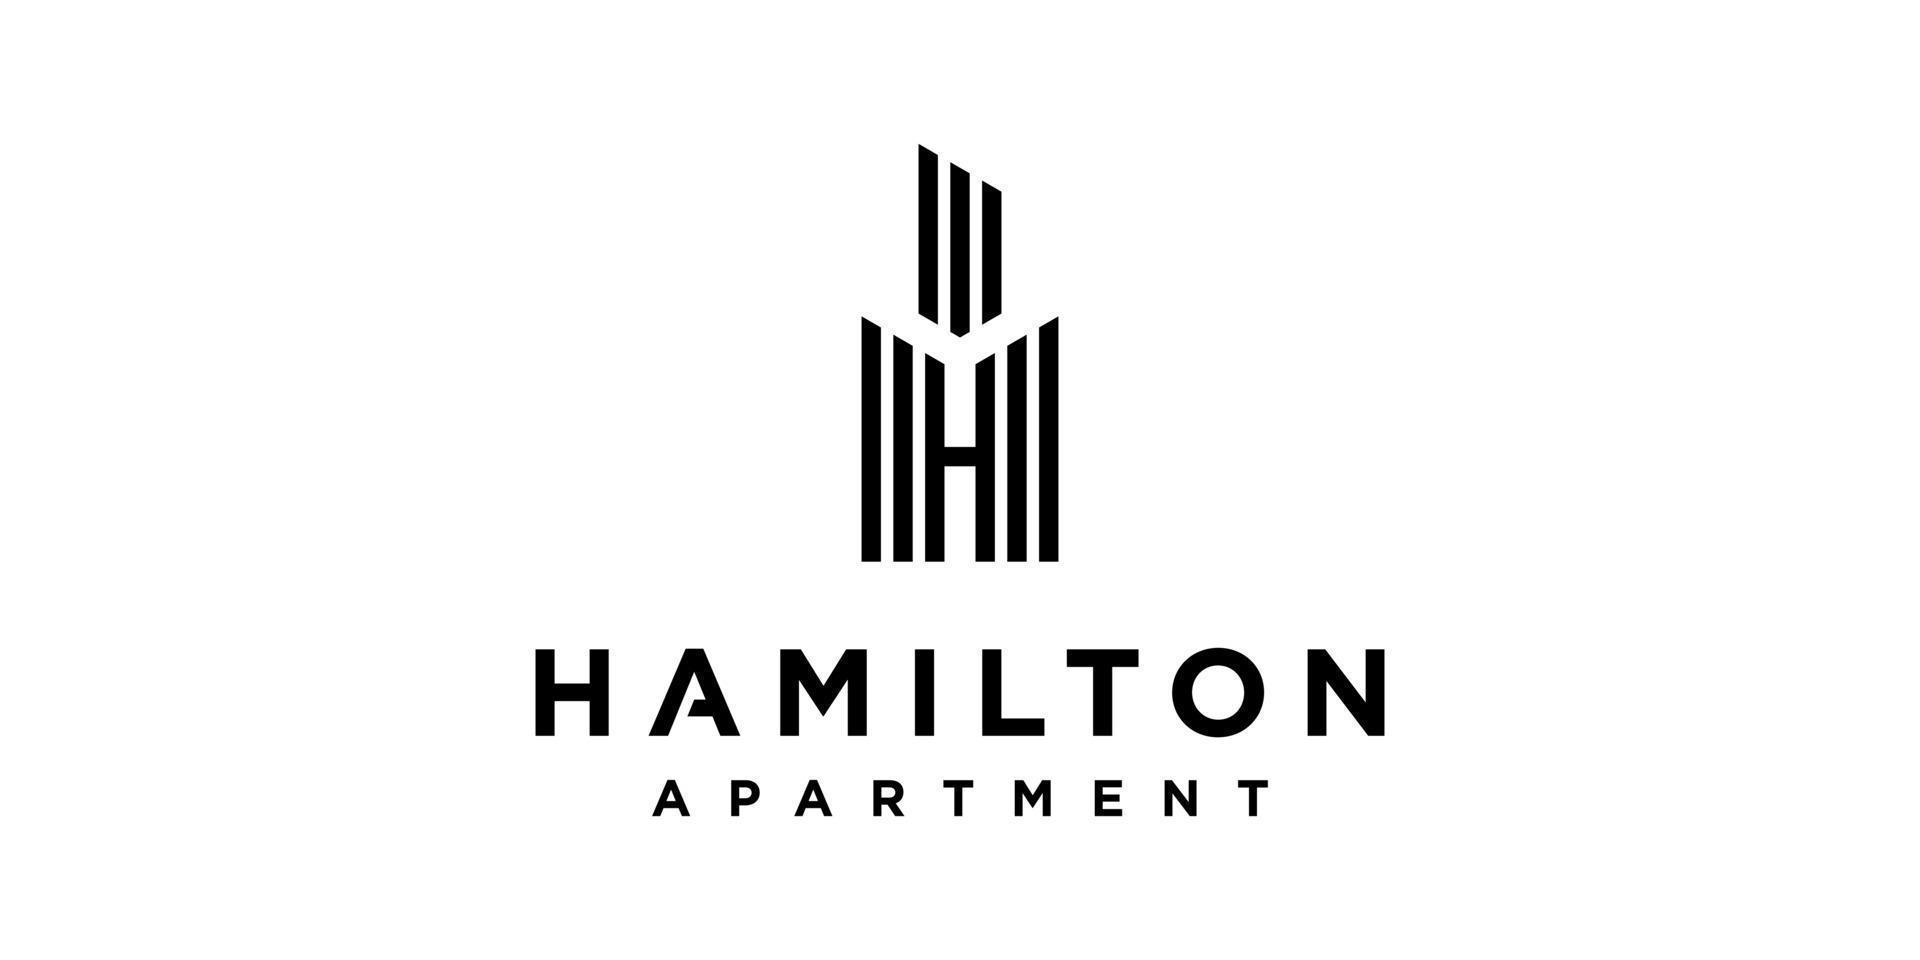 letra inicial h arquitetura de construção de prédio de apartamentos imobiliário vector design de logotipo